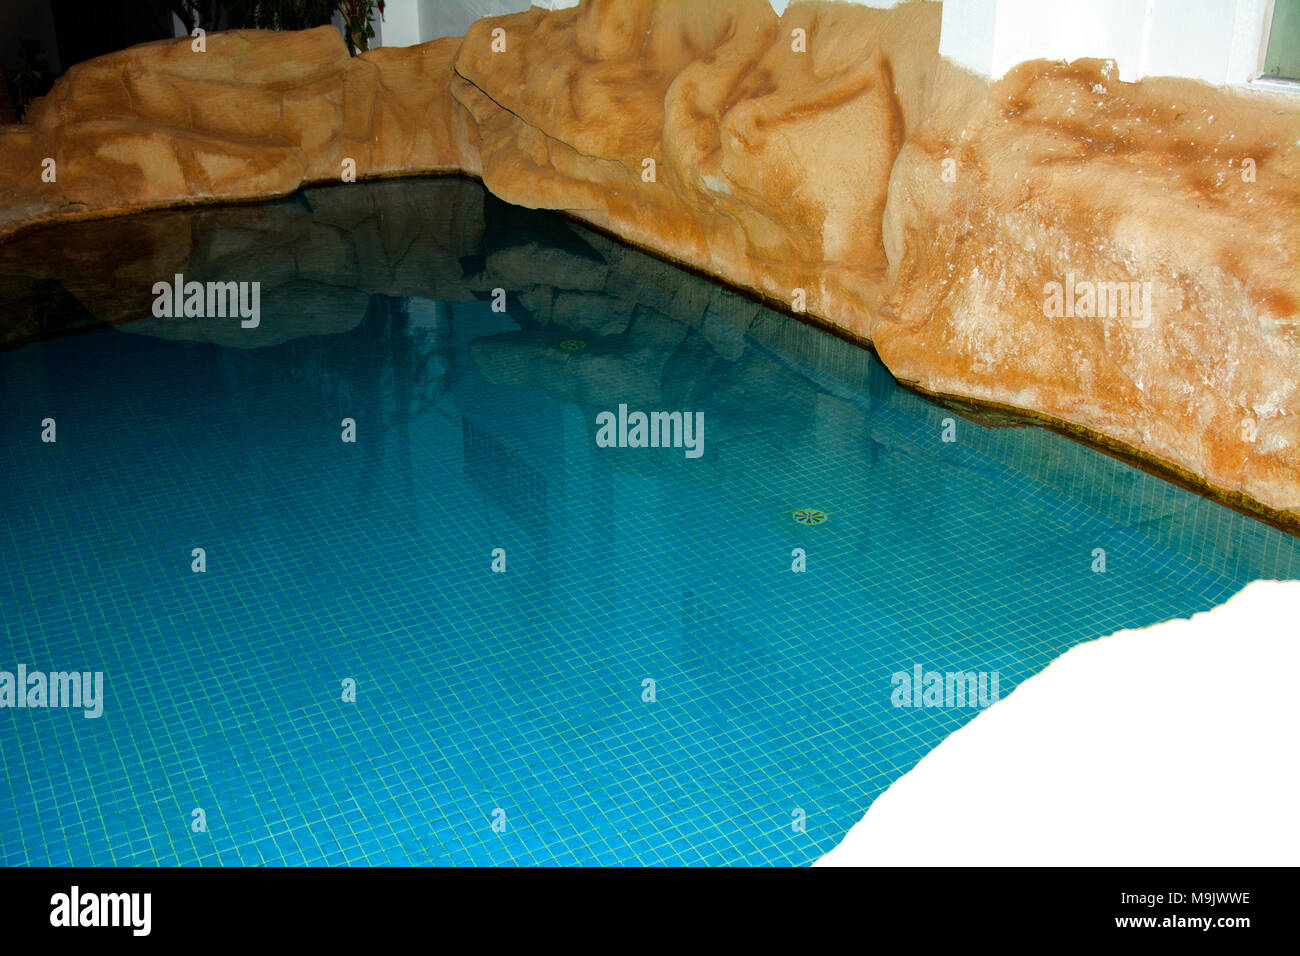 Sharm-el-Sheikh, Ägypten - März 14., 2018. Schöner Pool mit klarem blauen Wasser und der Reflexion von Objekten in der Nacht. Kyrene Grand Hotel. Stockfoto